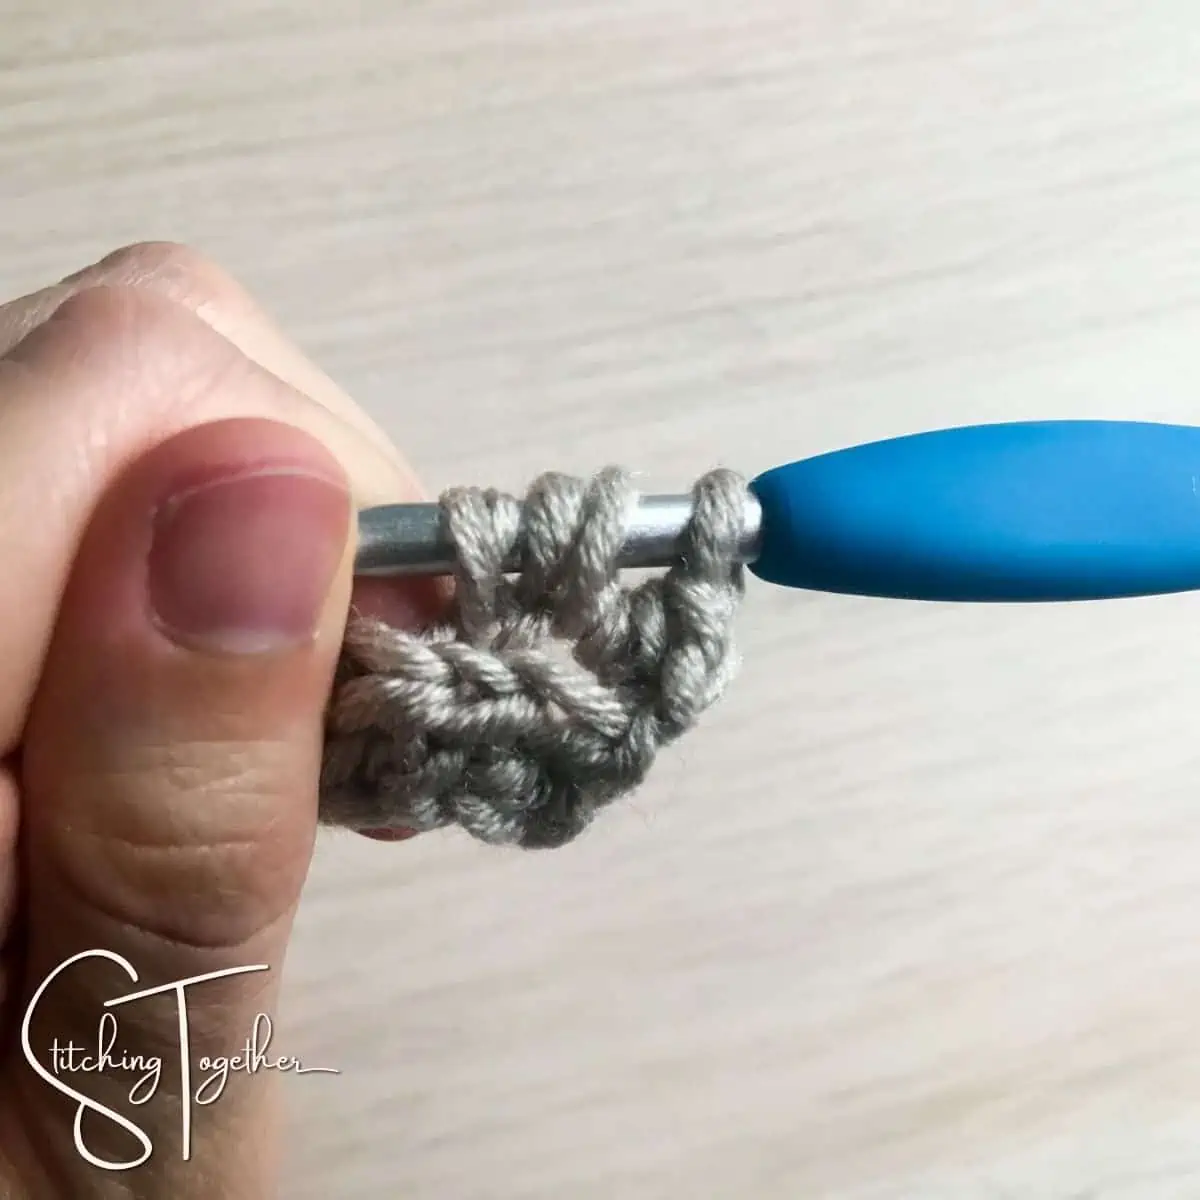 crochet stitch in process on a crochet hook